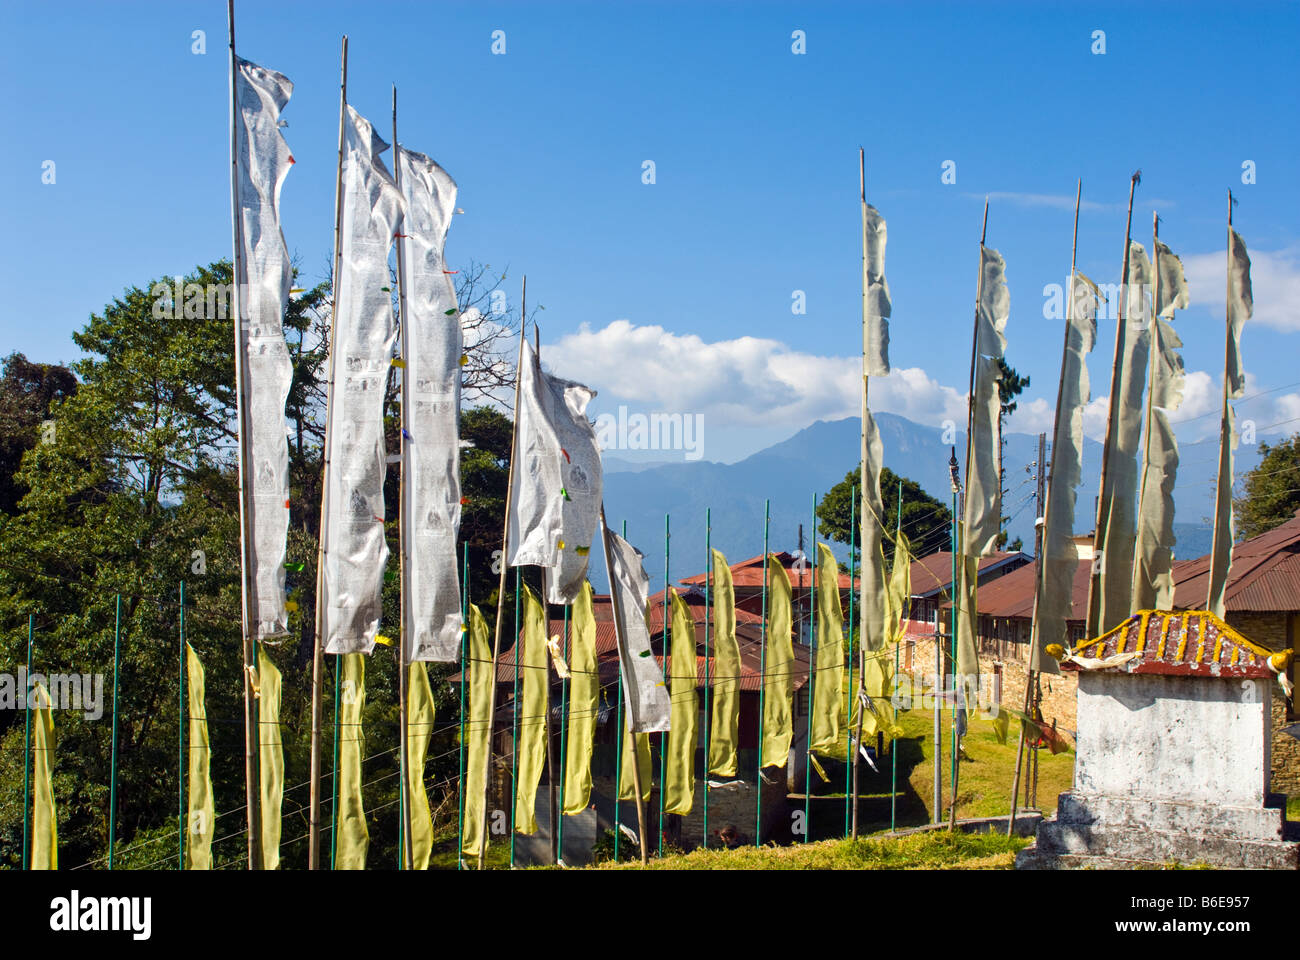 Prayer Flags at Pemayangtsi Monastery, Sikkim, India Stock Photo